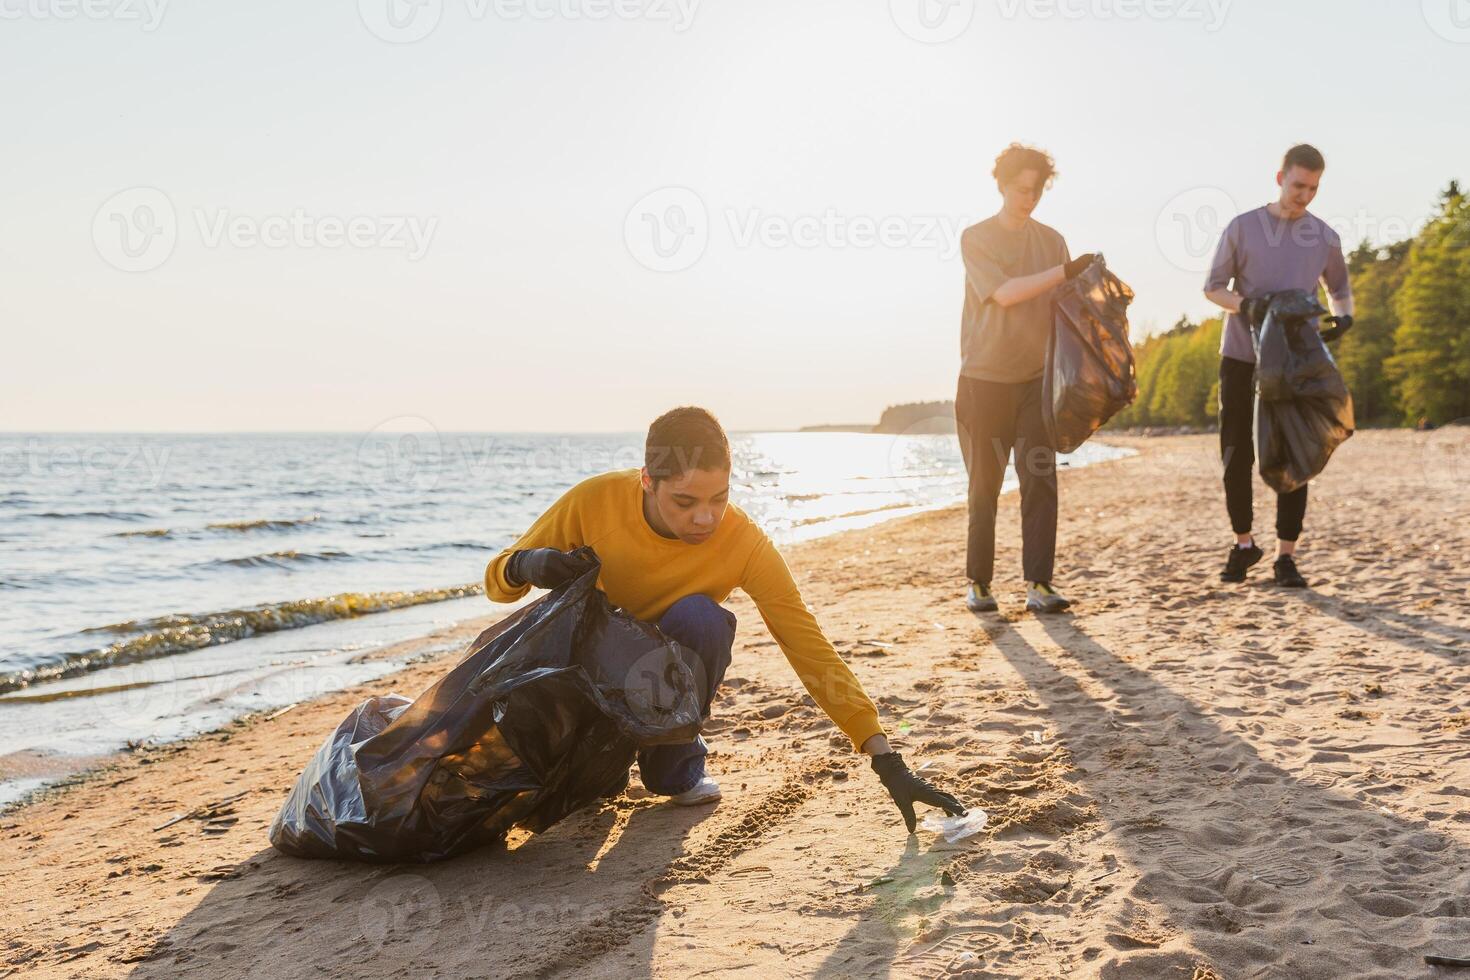 tierra día. voluntarios activistas equipo recoge basura limpieza de playa costero zona. mujer mans pone el plastico basura en basura bolso en Oceano costa. ambiental conservación costero zona limpieza foto